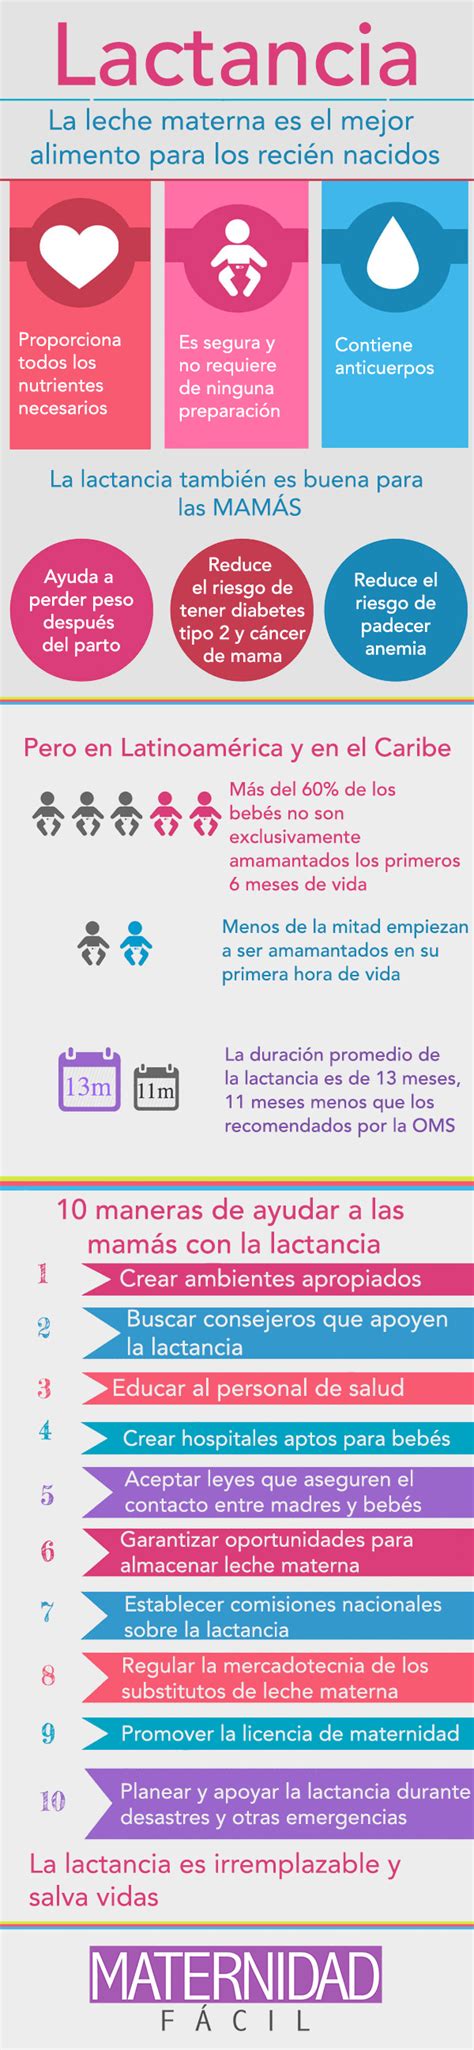 beneficios de la lactancia materna maternidadfacil